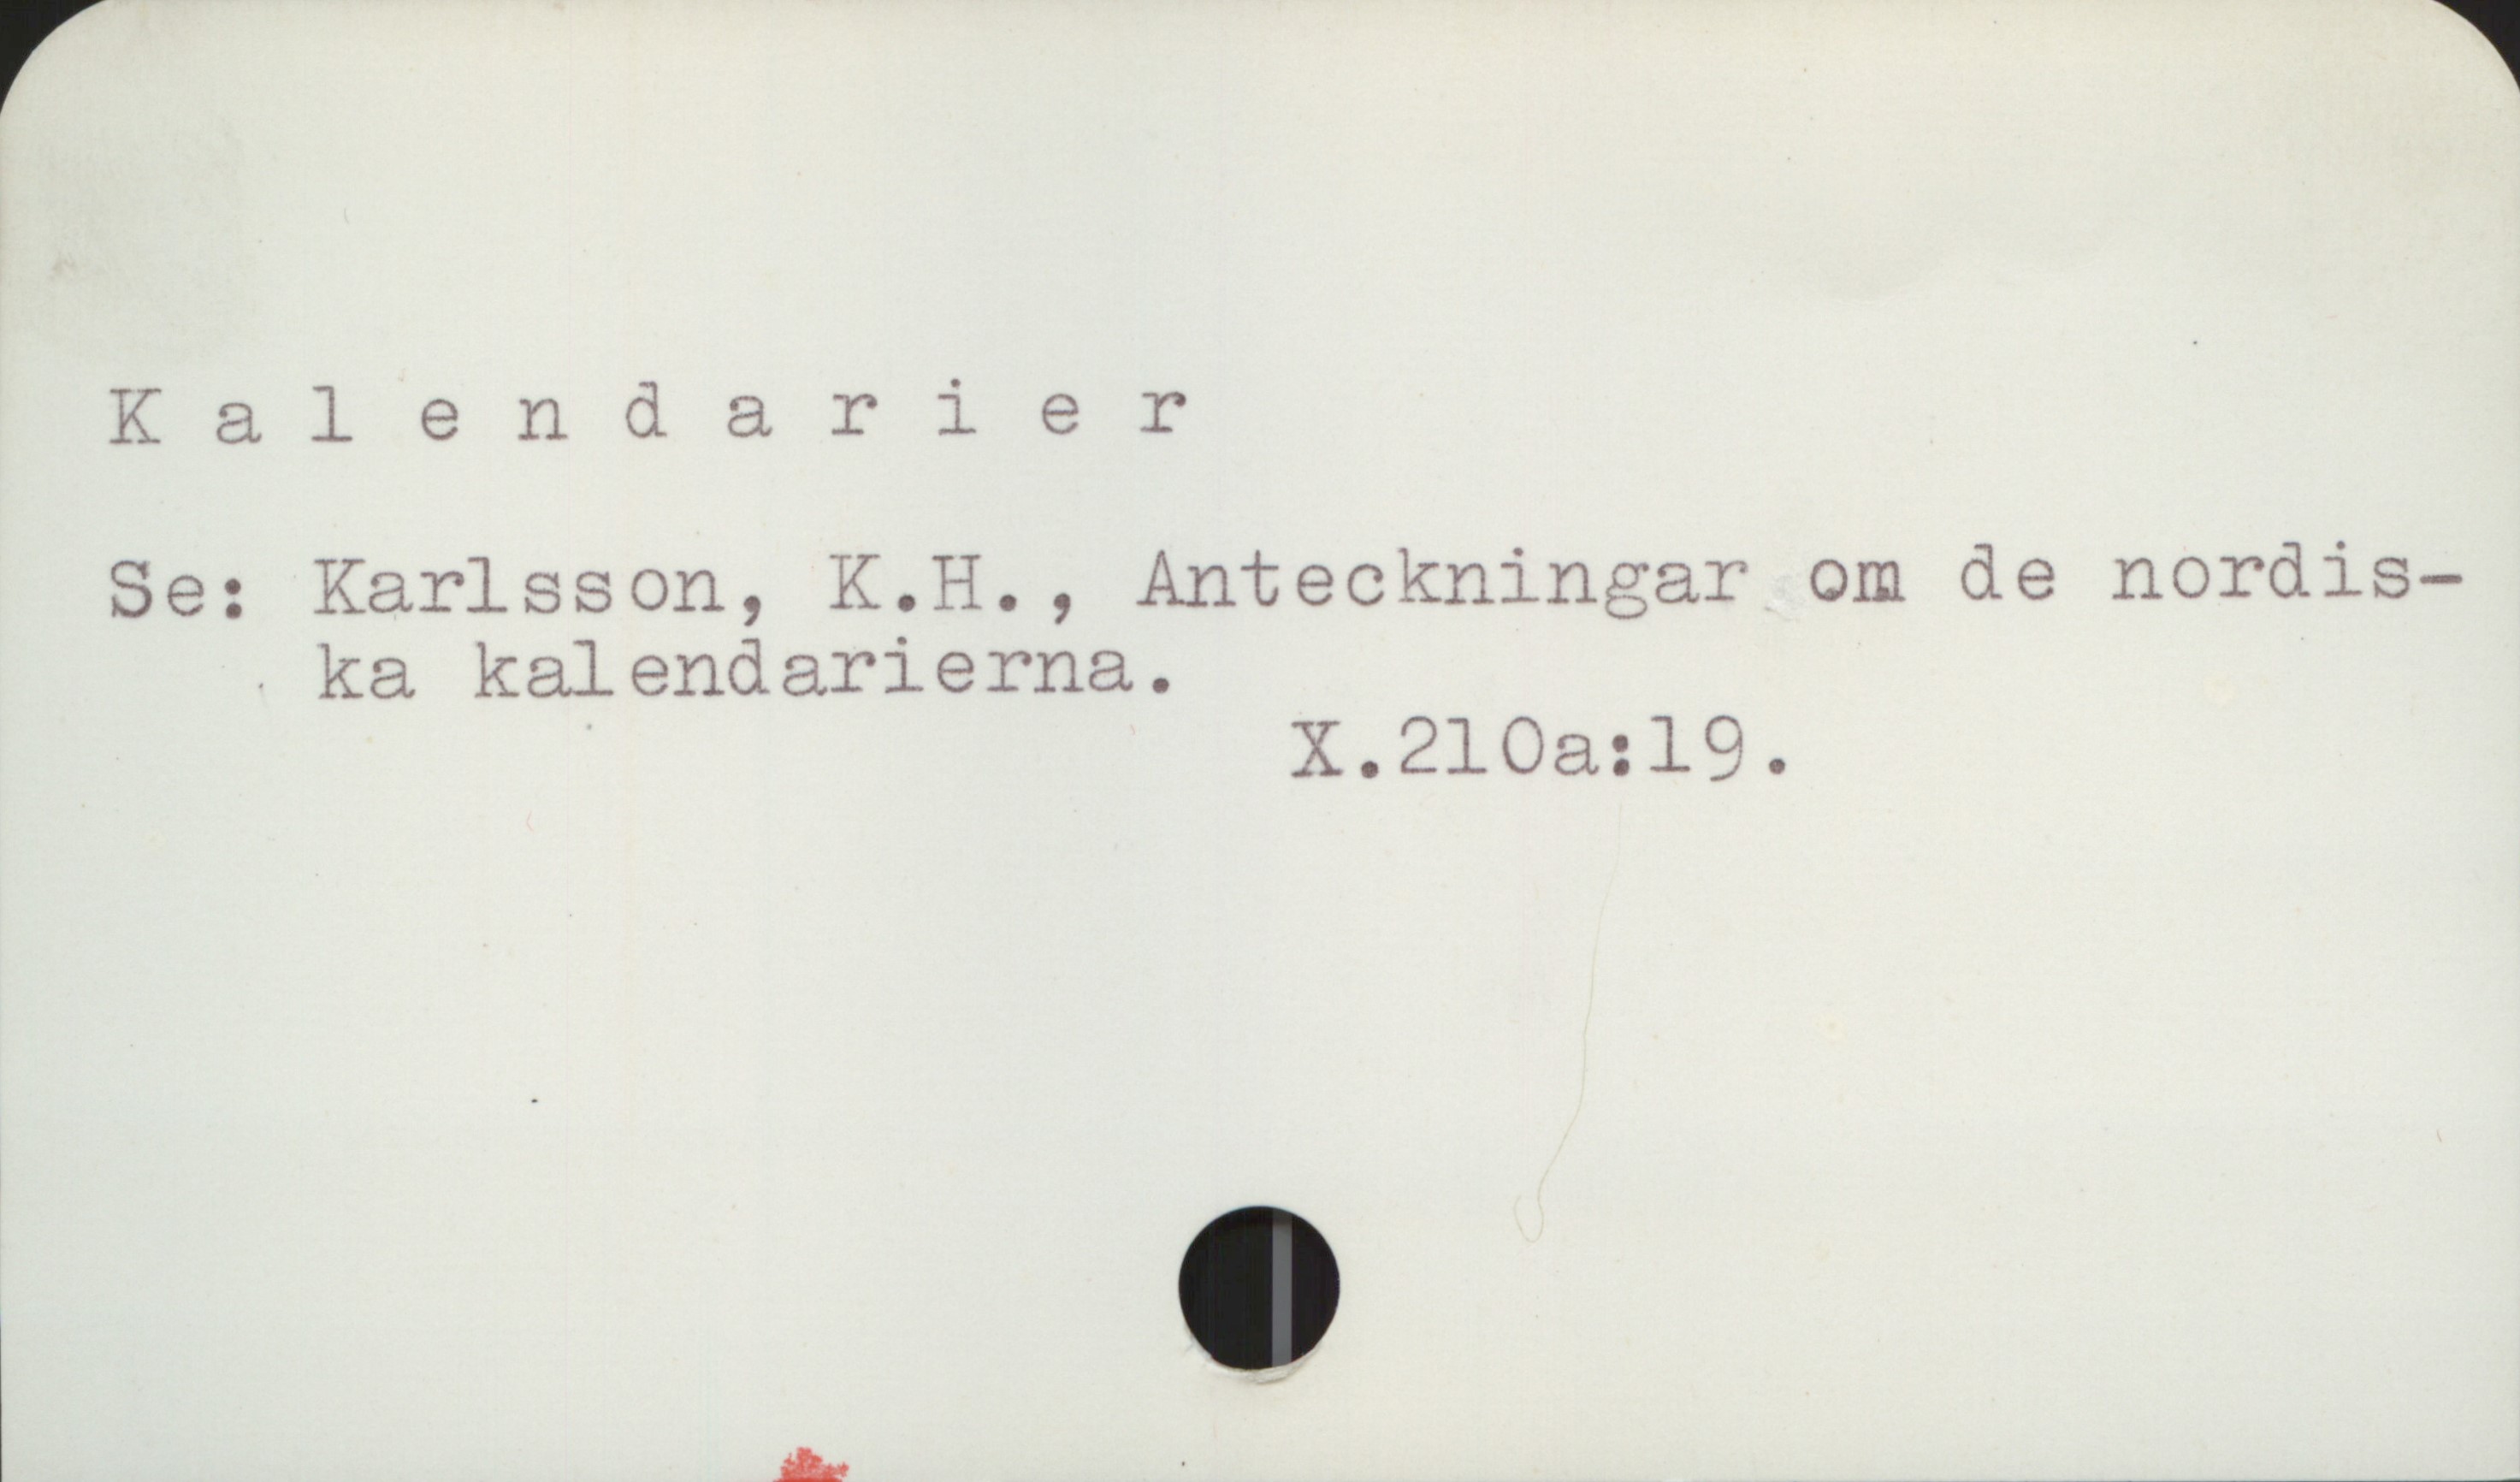 Kalendarier Kalendarier

Se: Karlsson, K.H., Anteckningar om de nordiska 
       kalendarierna.
                                    X 210a: 19